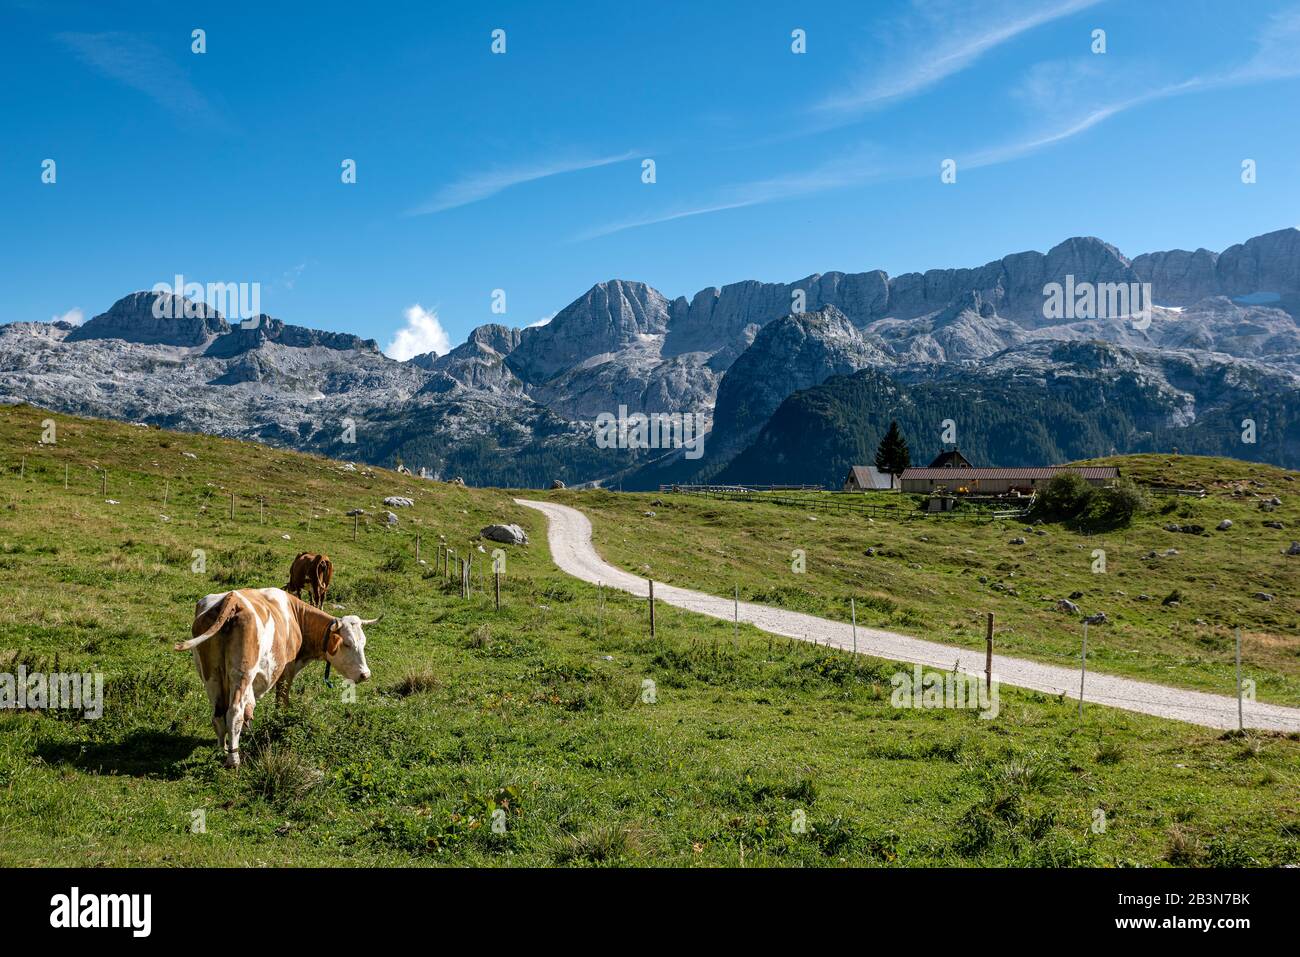 Algunas vacas y una cabaña alpina, para la producción de queso, en la meseta de Montasio. El macizo de Kanin es visible en el fondo. Foto de stock